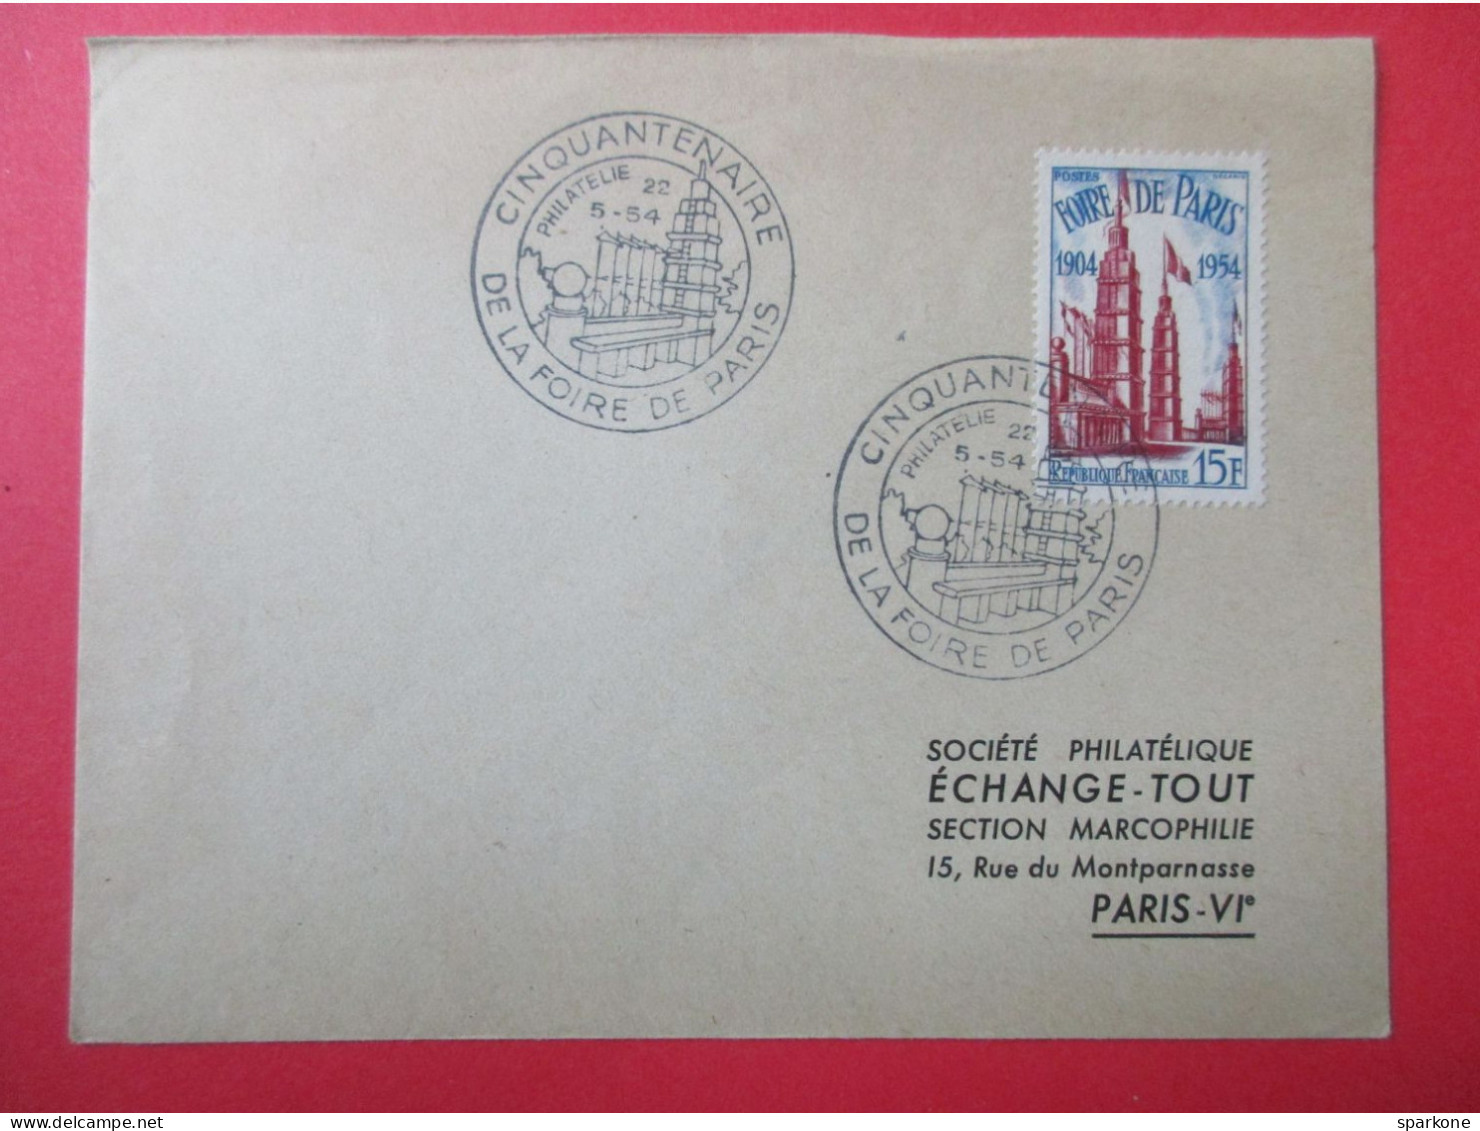 Macrophilie - Enveloppe - France - Cinquantenaire De La Foire De Paris - Société Philatélique Echange Tout - 1954 - Commemorative Postmarks